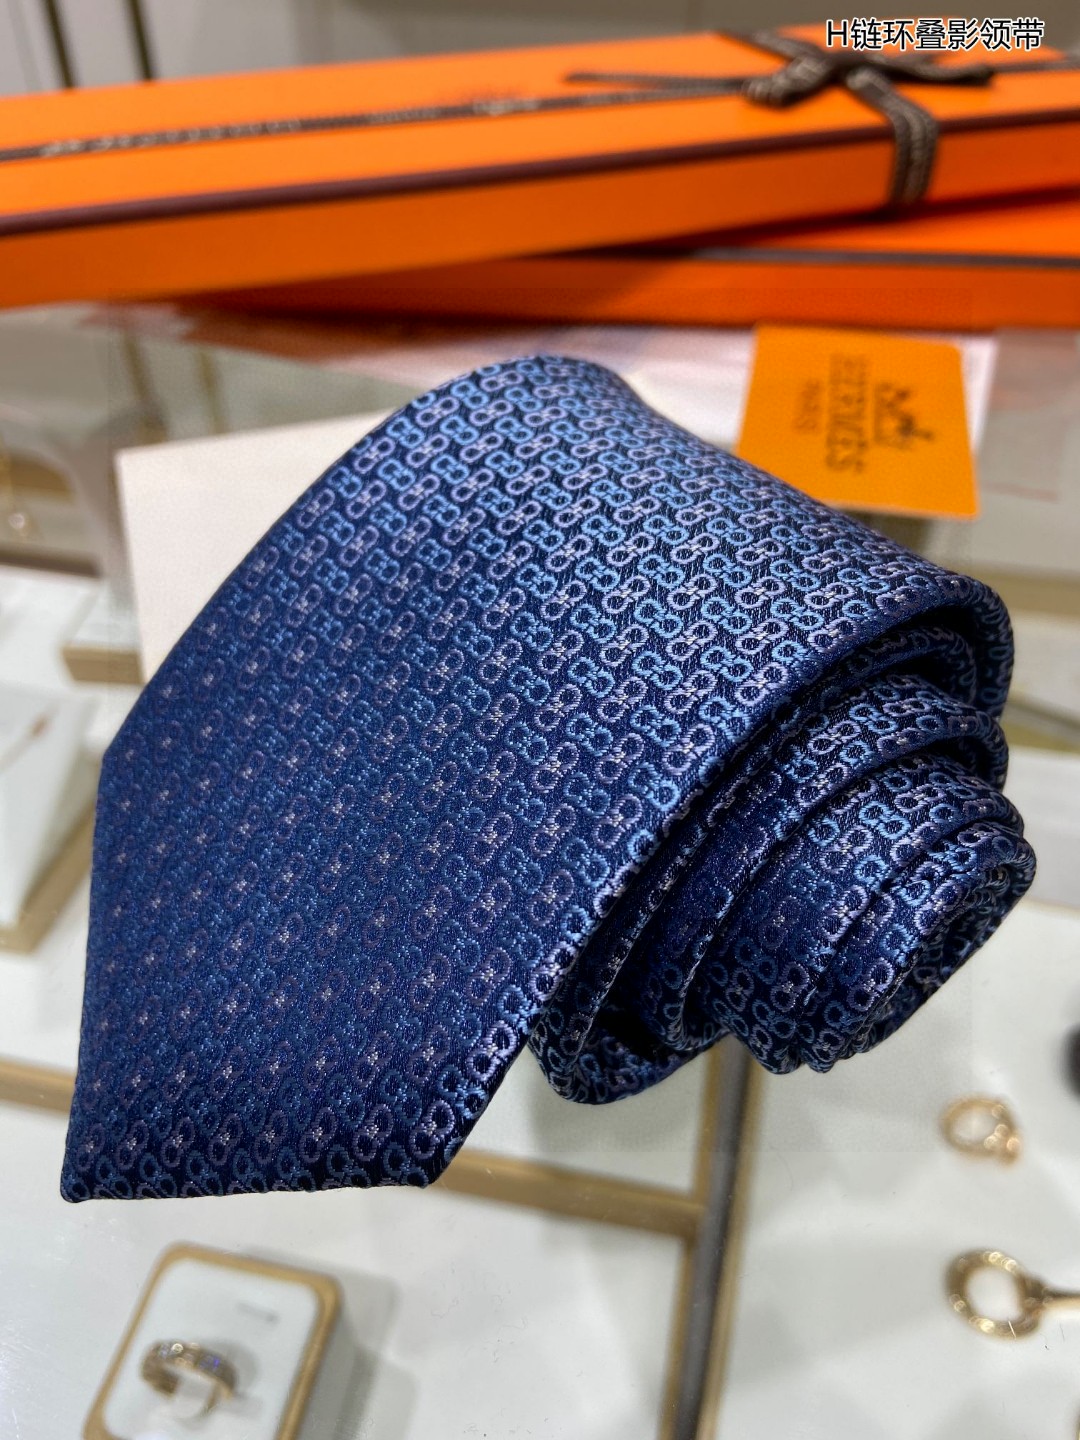 男士新款领带系列H连环叠影领带稀有H家每年都有一千条不同印花的领带面世从最初的多以几何图案表现骑术活动为